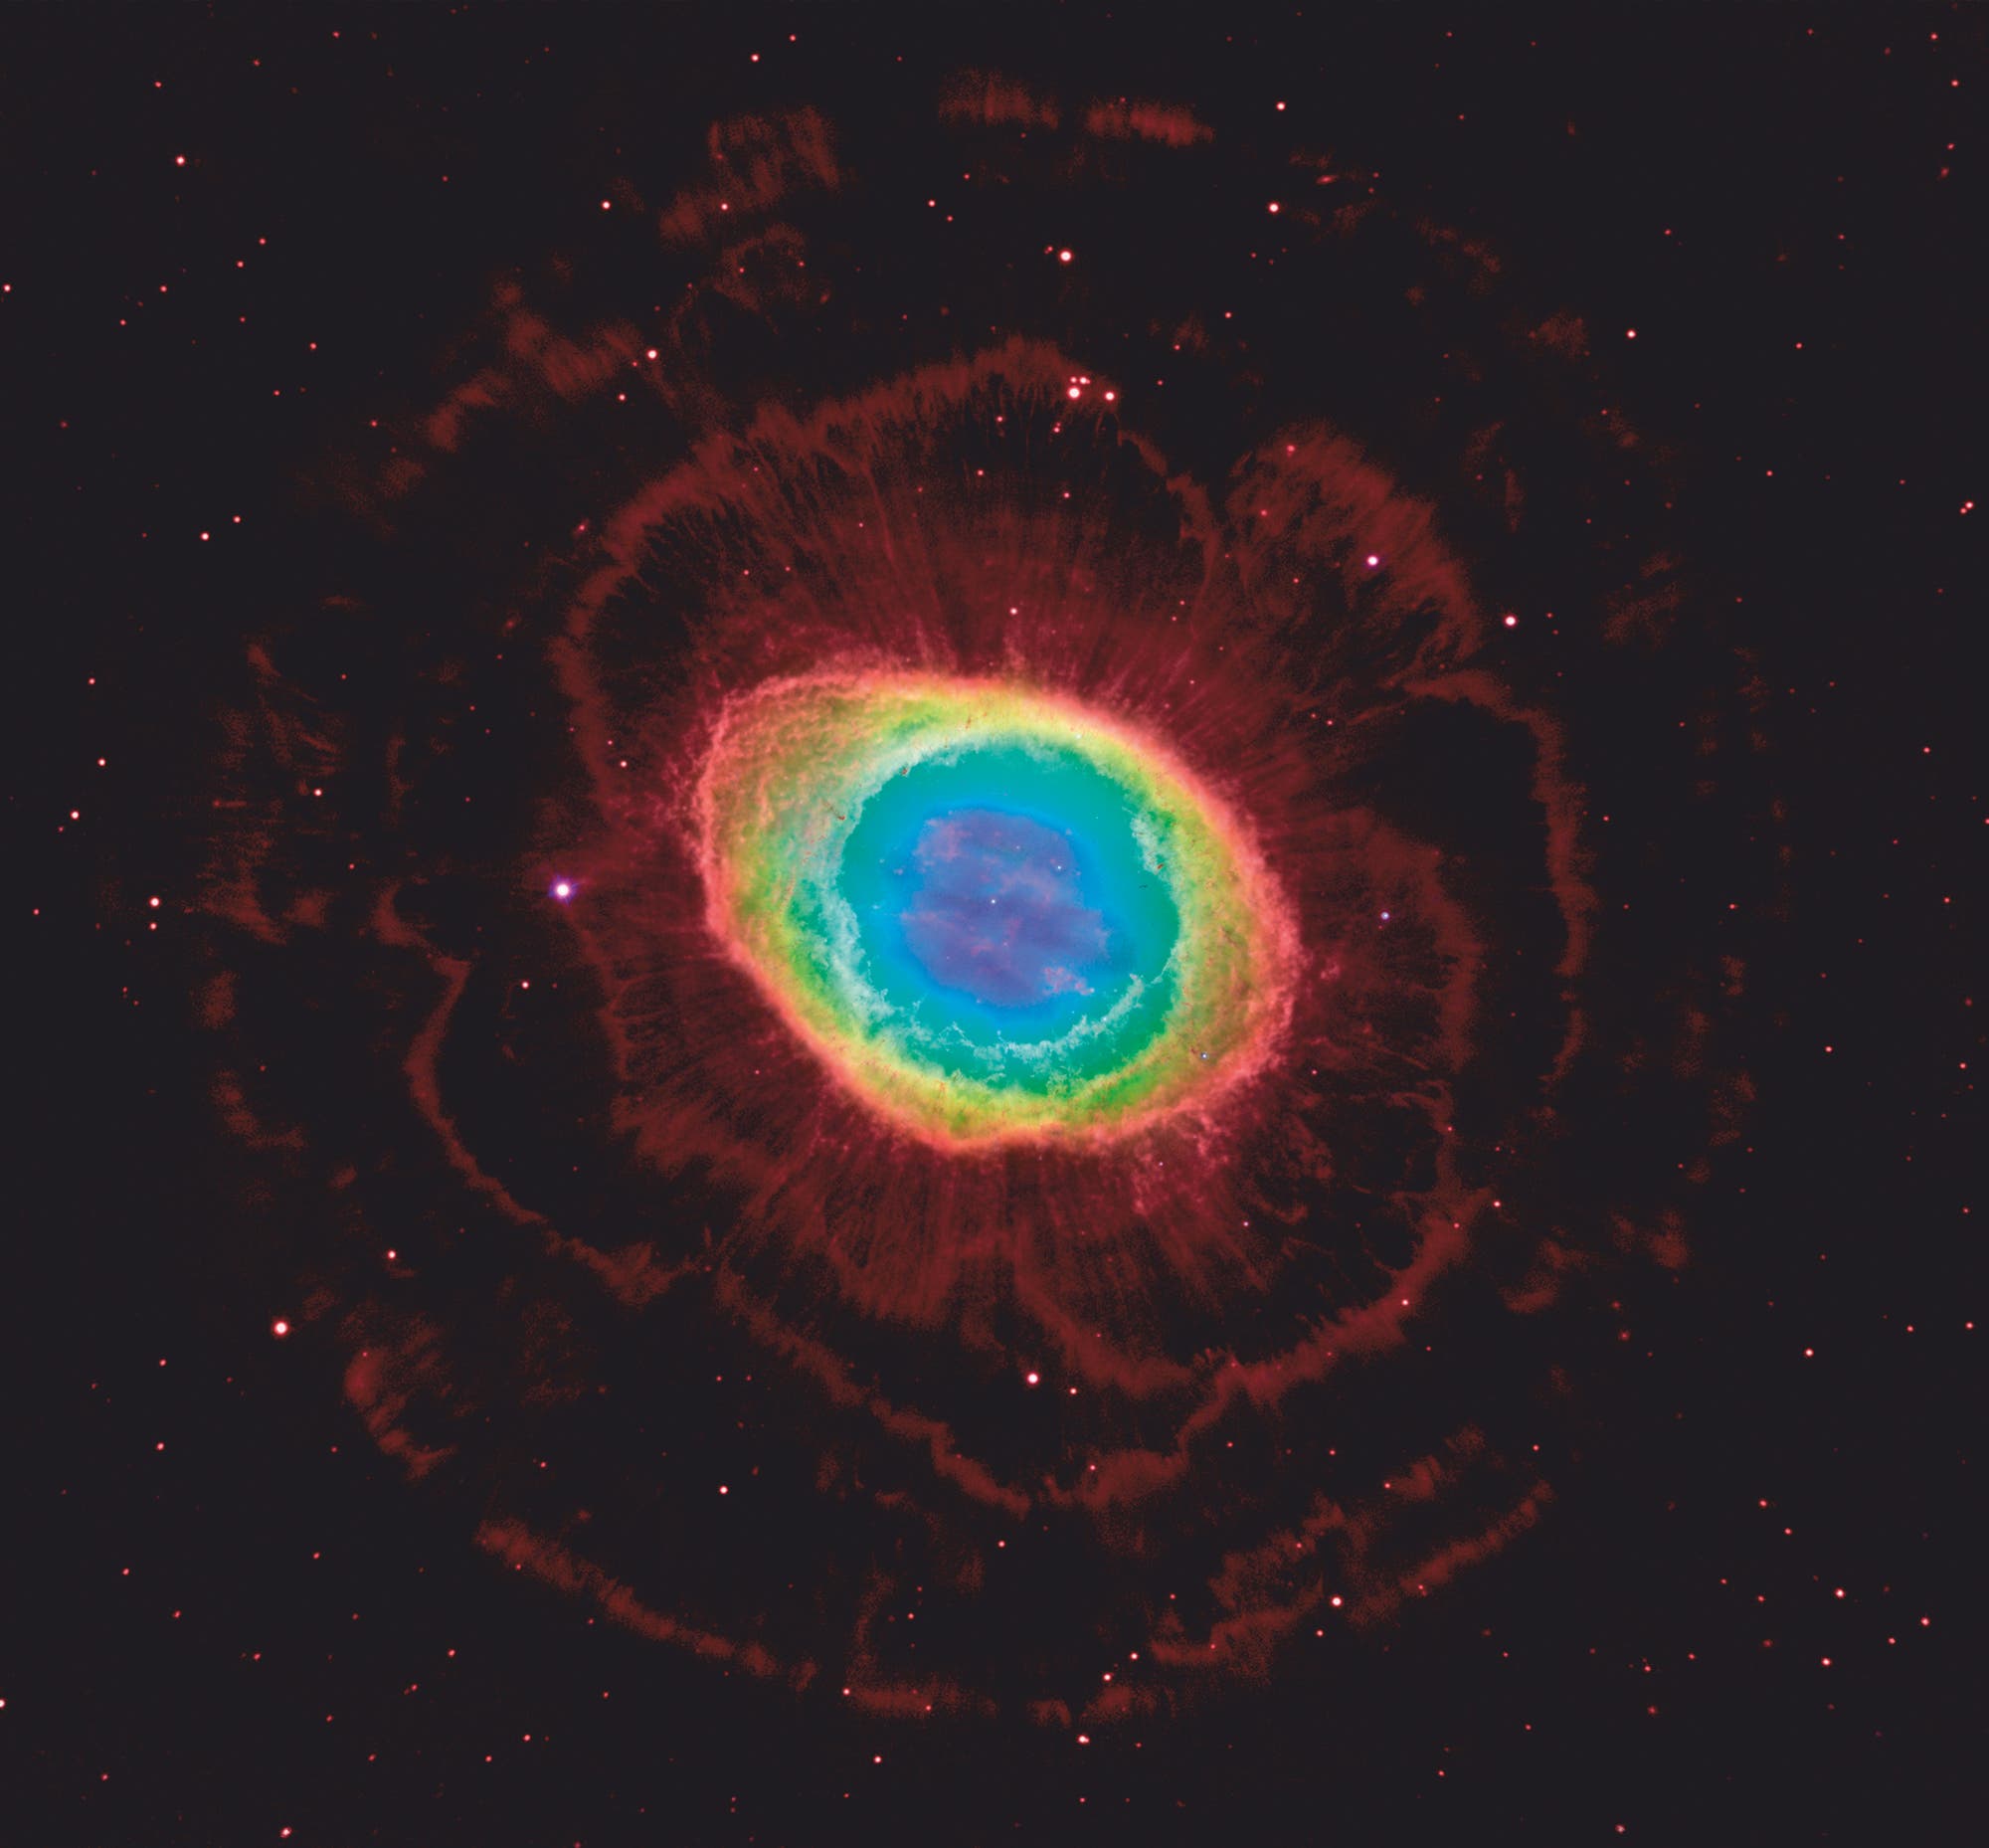 Der Ringnebel in der Leier, Aufnahme des Weltraumteleskops Hubble